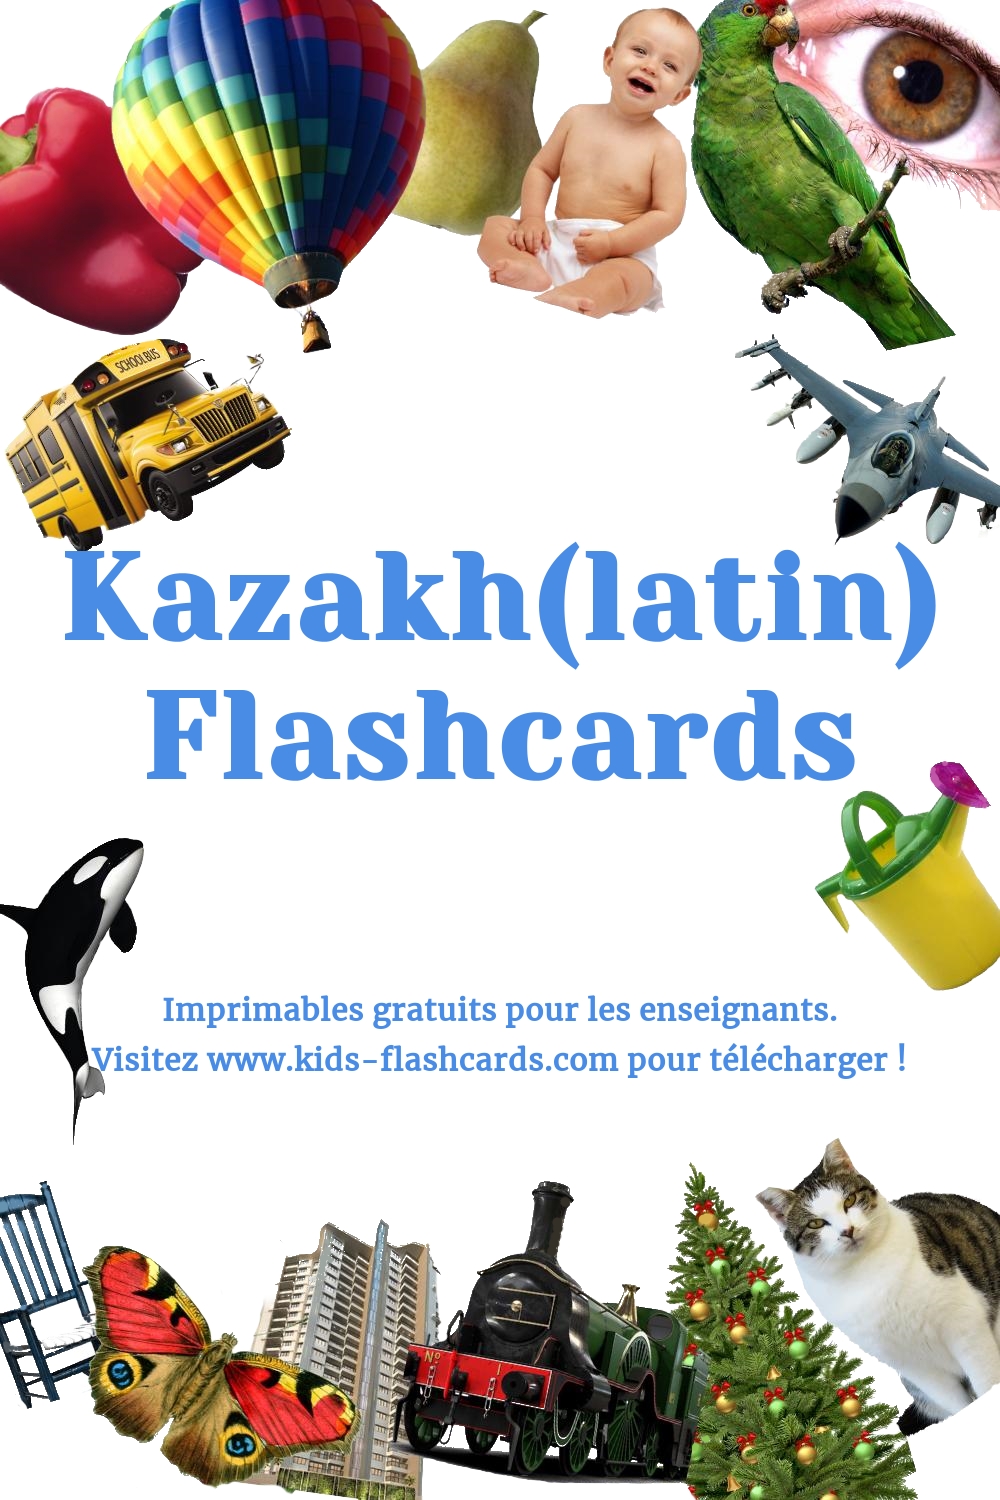 Imprimables gratuits en Kazakh(latin)